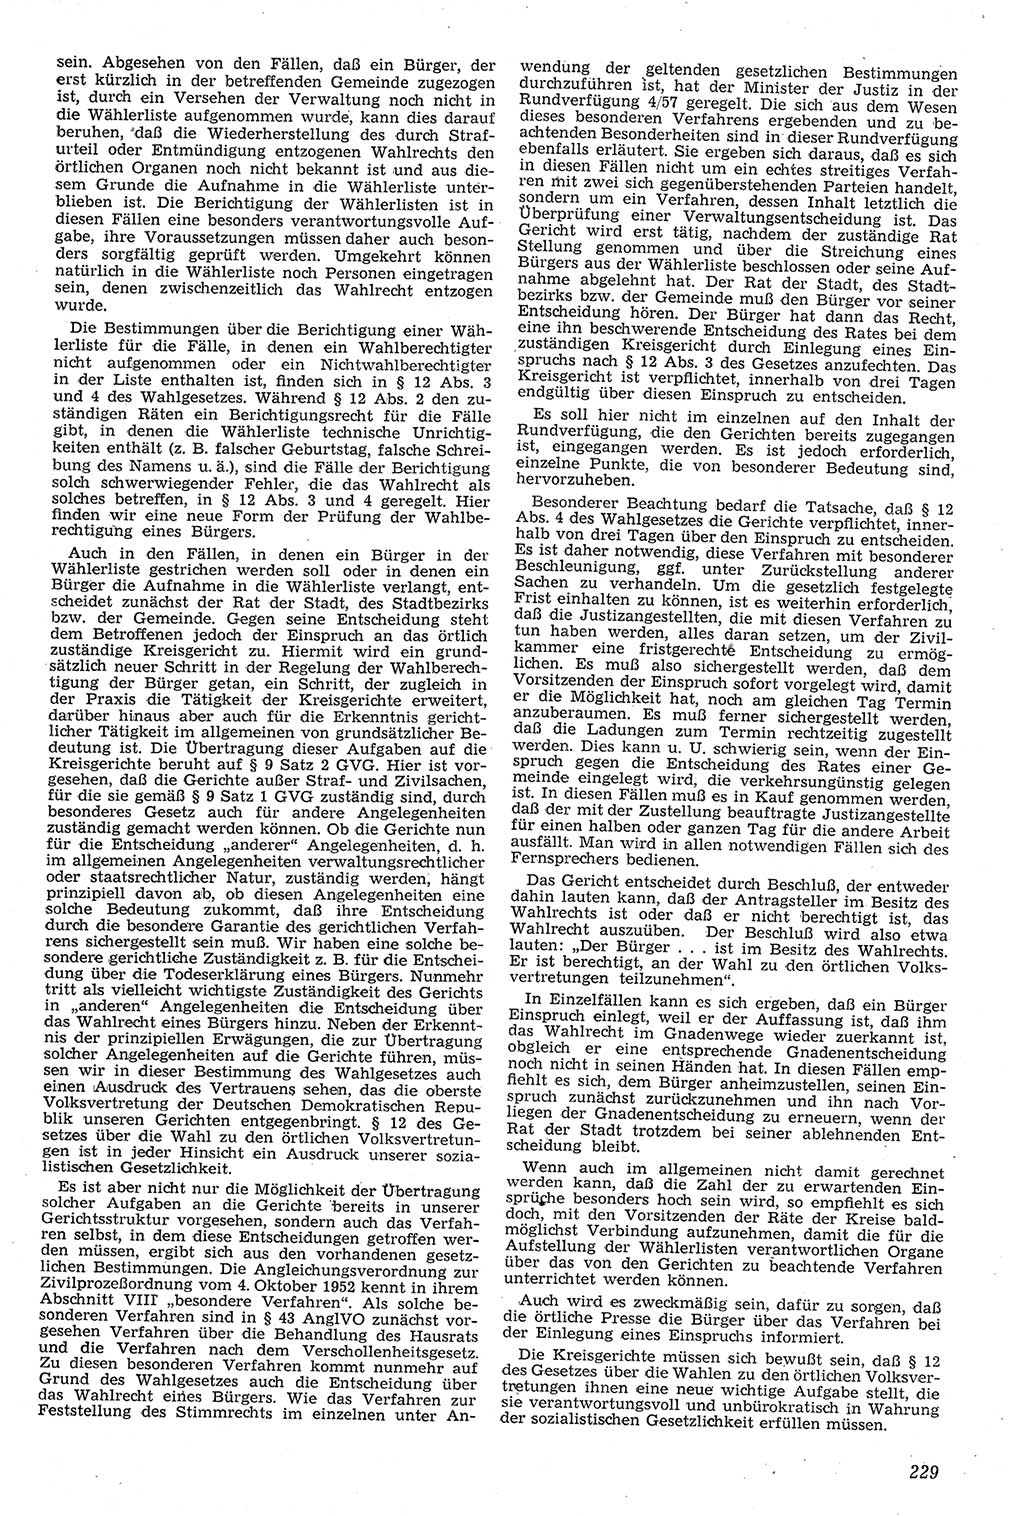 Neue Justiz (NJ), Zeitschrift für Recht und Rechtswissenschaft [Deutsche Demokratische Republik (DDR)], 11. Jahrgang 1957, Seite 229 (NJ DDR 1957, S. 229)